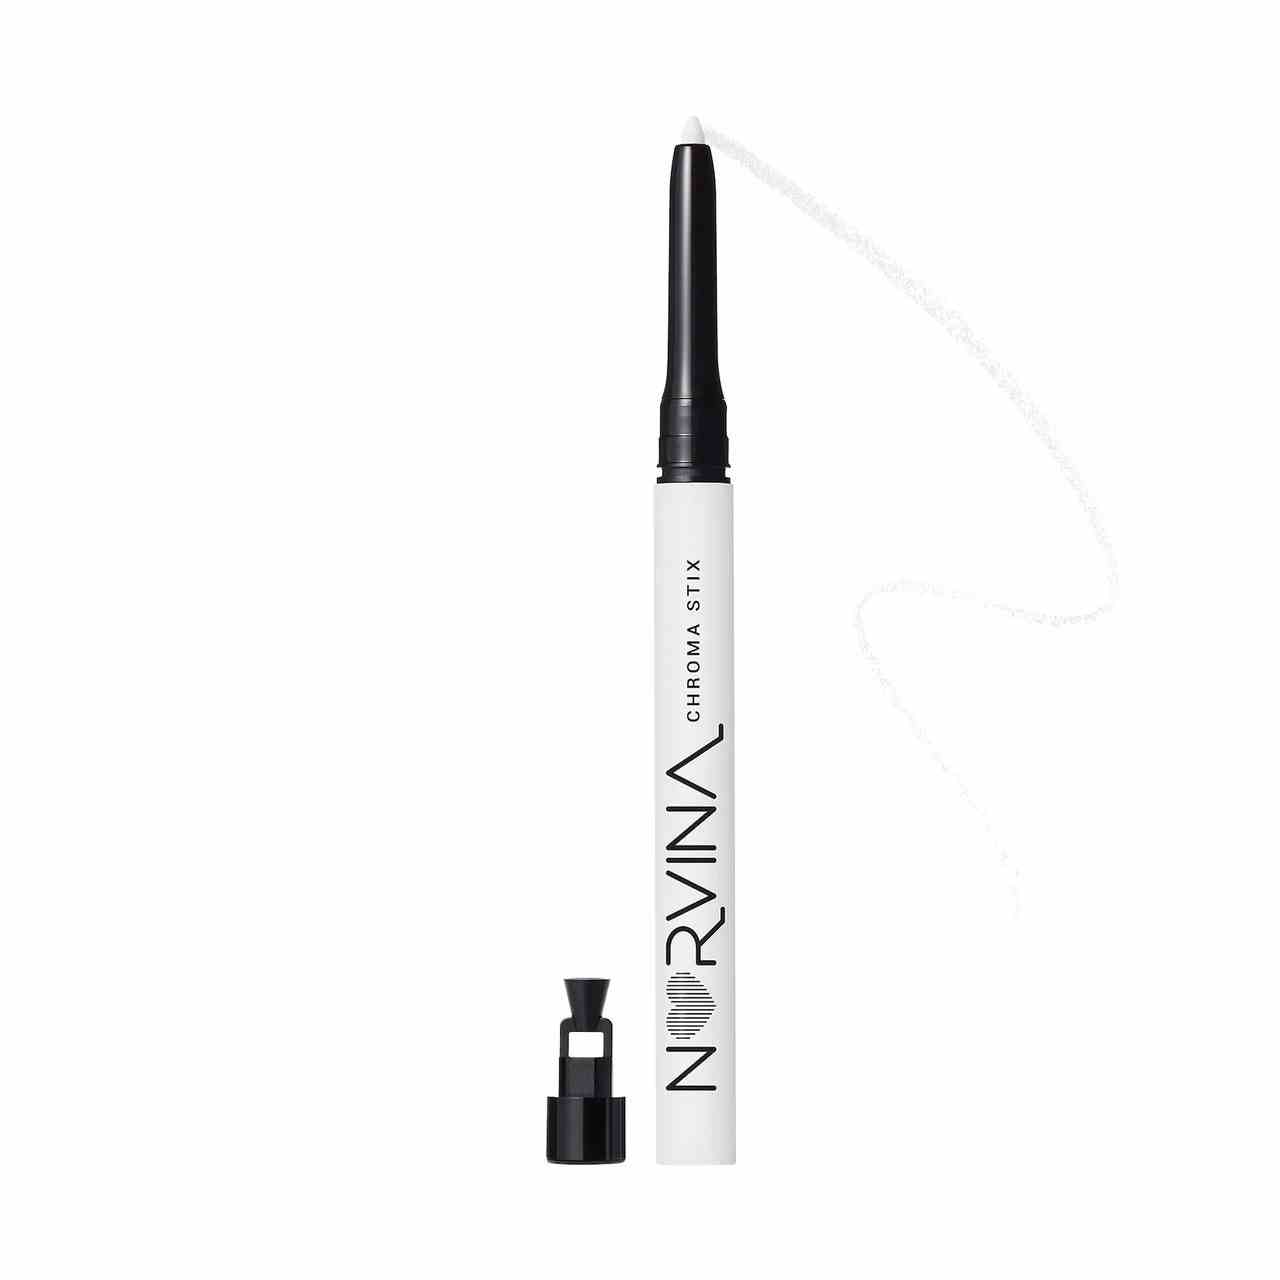 Anastasia Beverly Hills Norvina Chroma Stix Make-up-Stift in Weiß Weißer Kajalstift mit schwarzer Anspitzerspitze an der Seite auf weißem Hintergrund